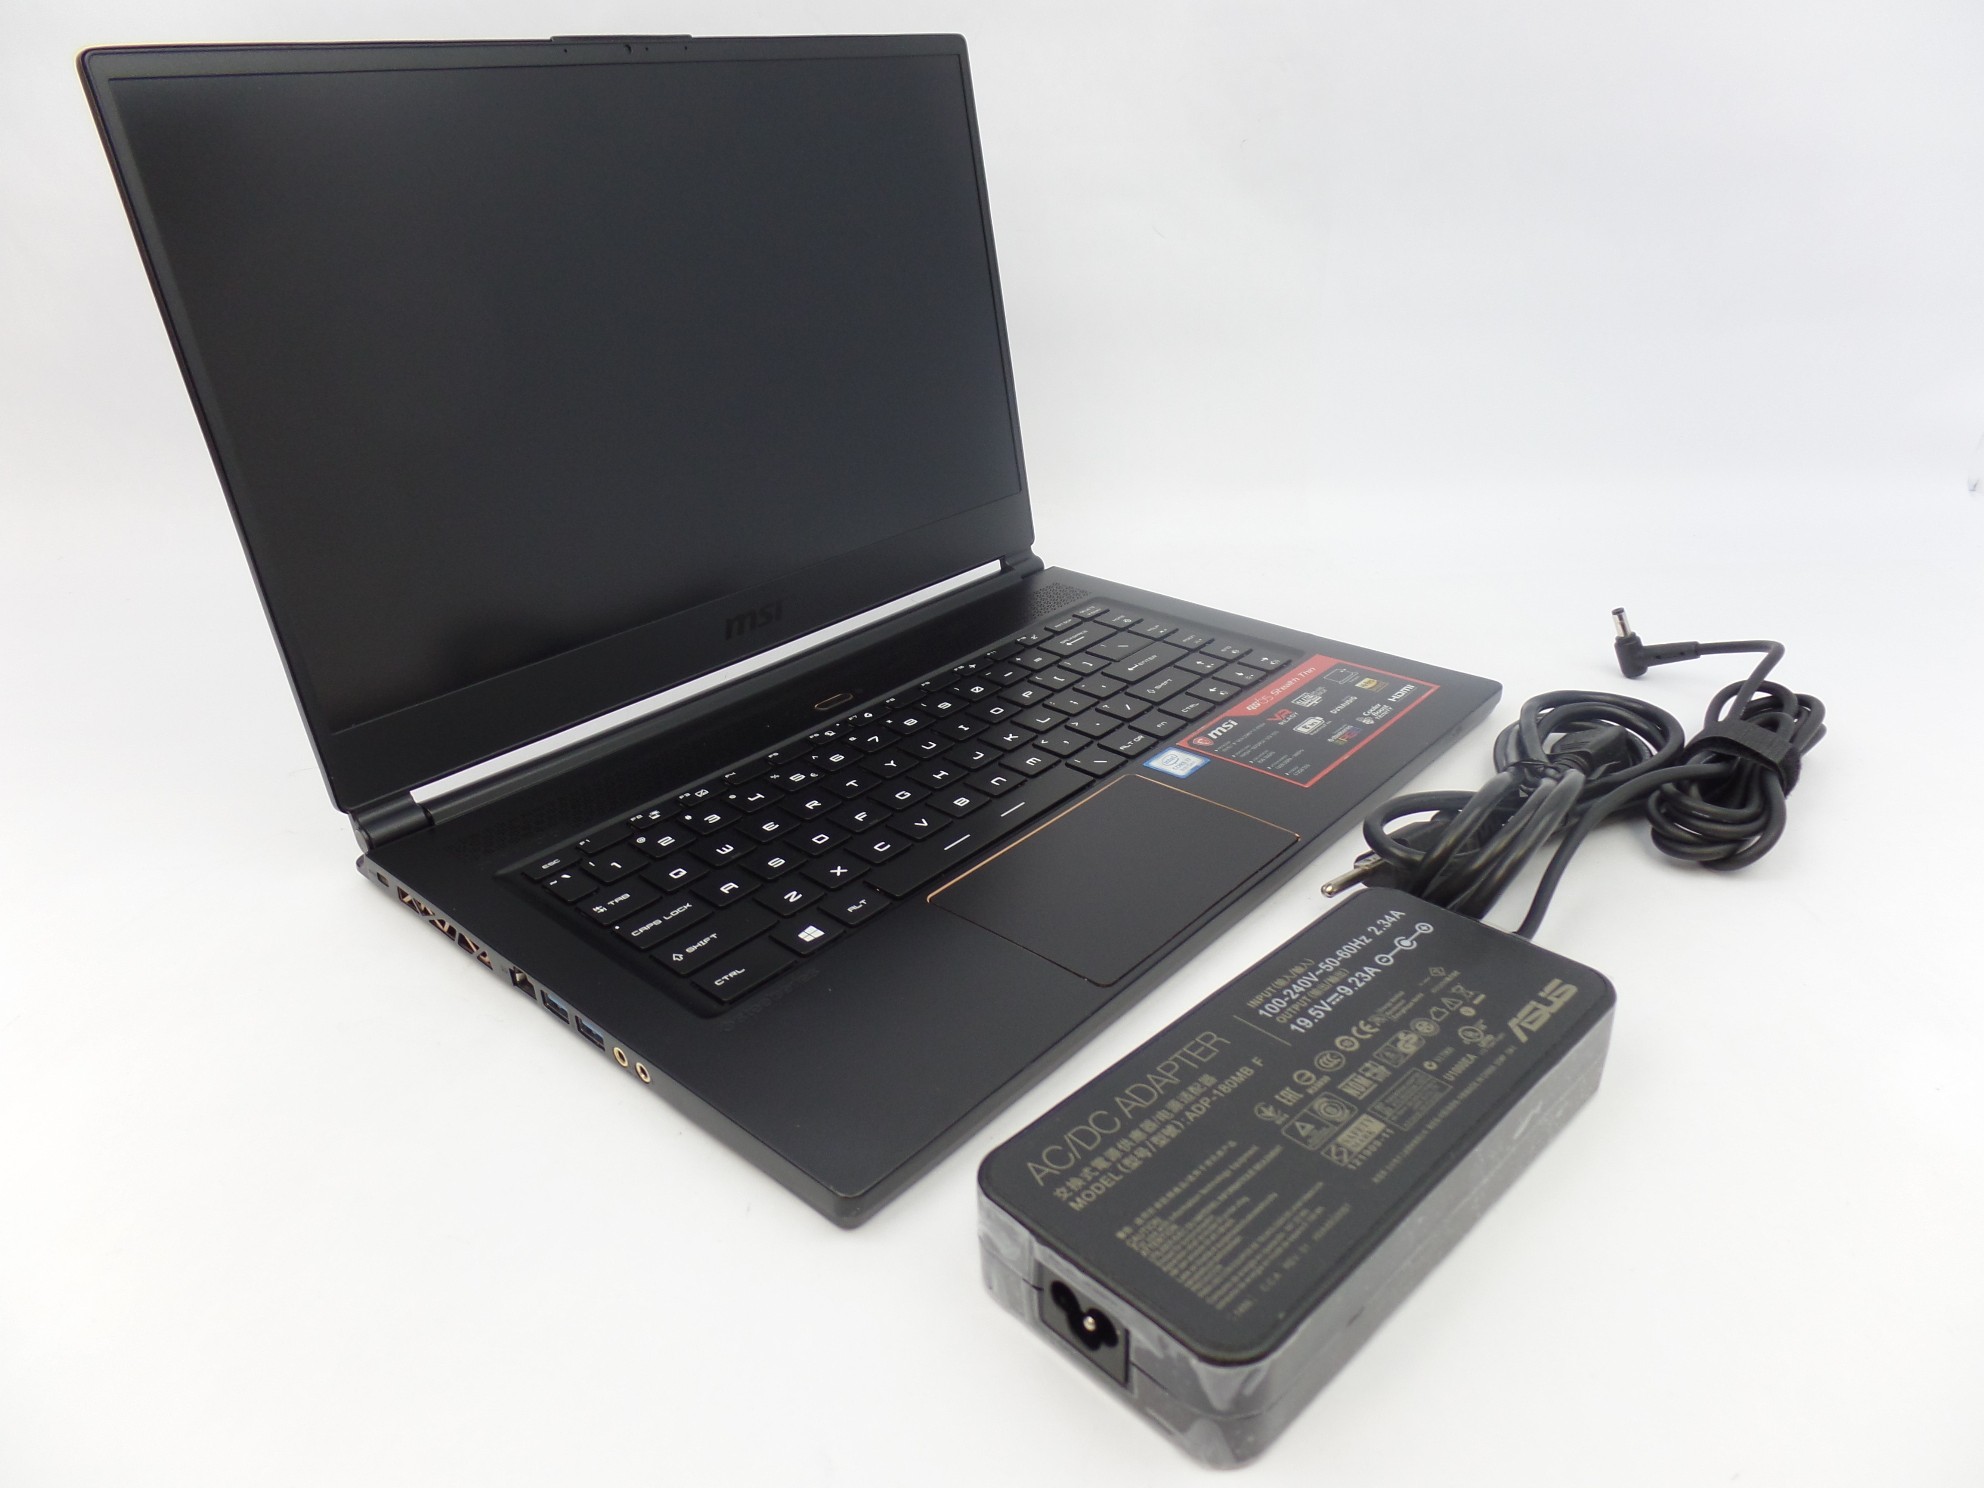 MSI GS65 8RF Steath 15.6" FHD i7-8750H 16GB 512GB GTX 1070 W10H Gaming Laptop U1